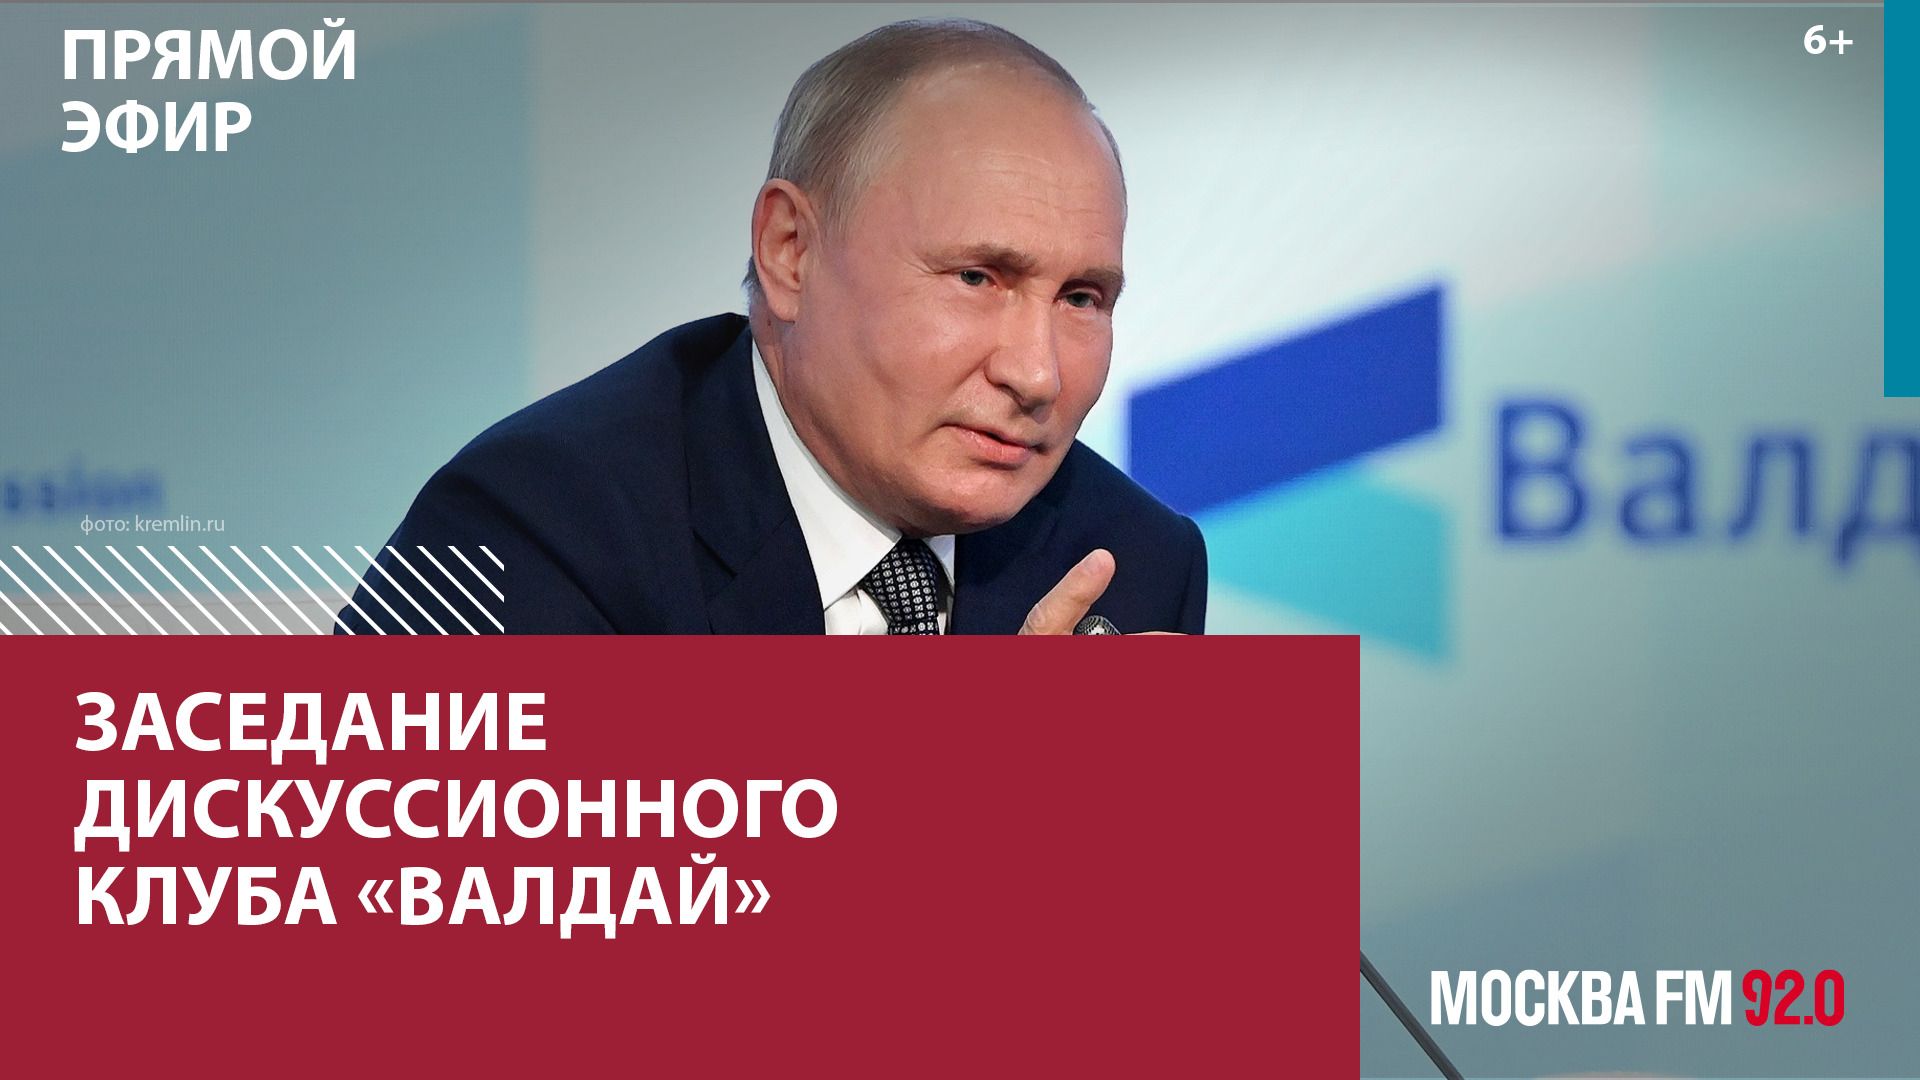 Выступление Владимира Путина на ежегодном заседании дискуссионного клуба «Валдай» — Москва FM